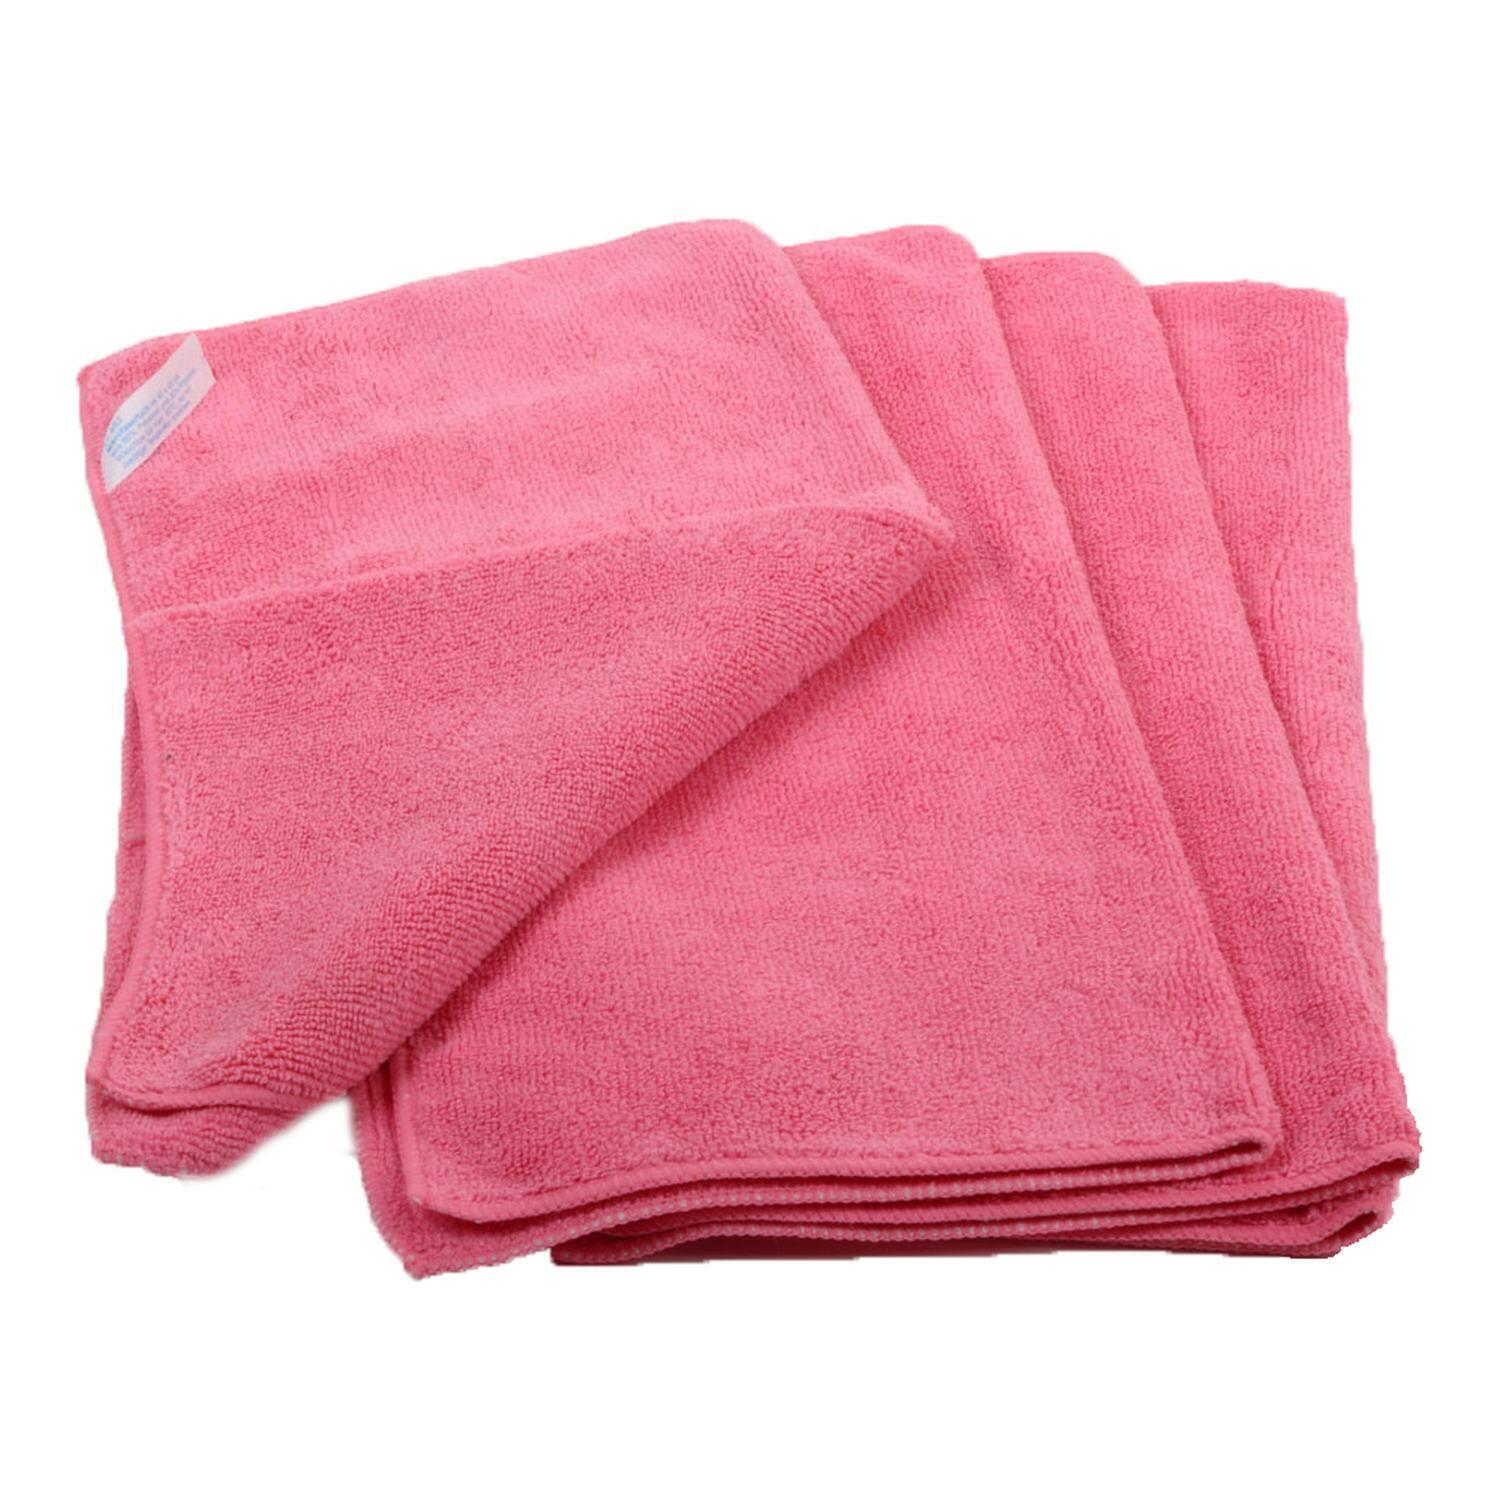 Premium Mikrofasertücher 40x40cm rosa, waschbar extra stark, 20 Stk.